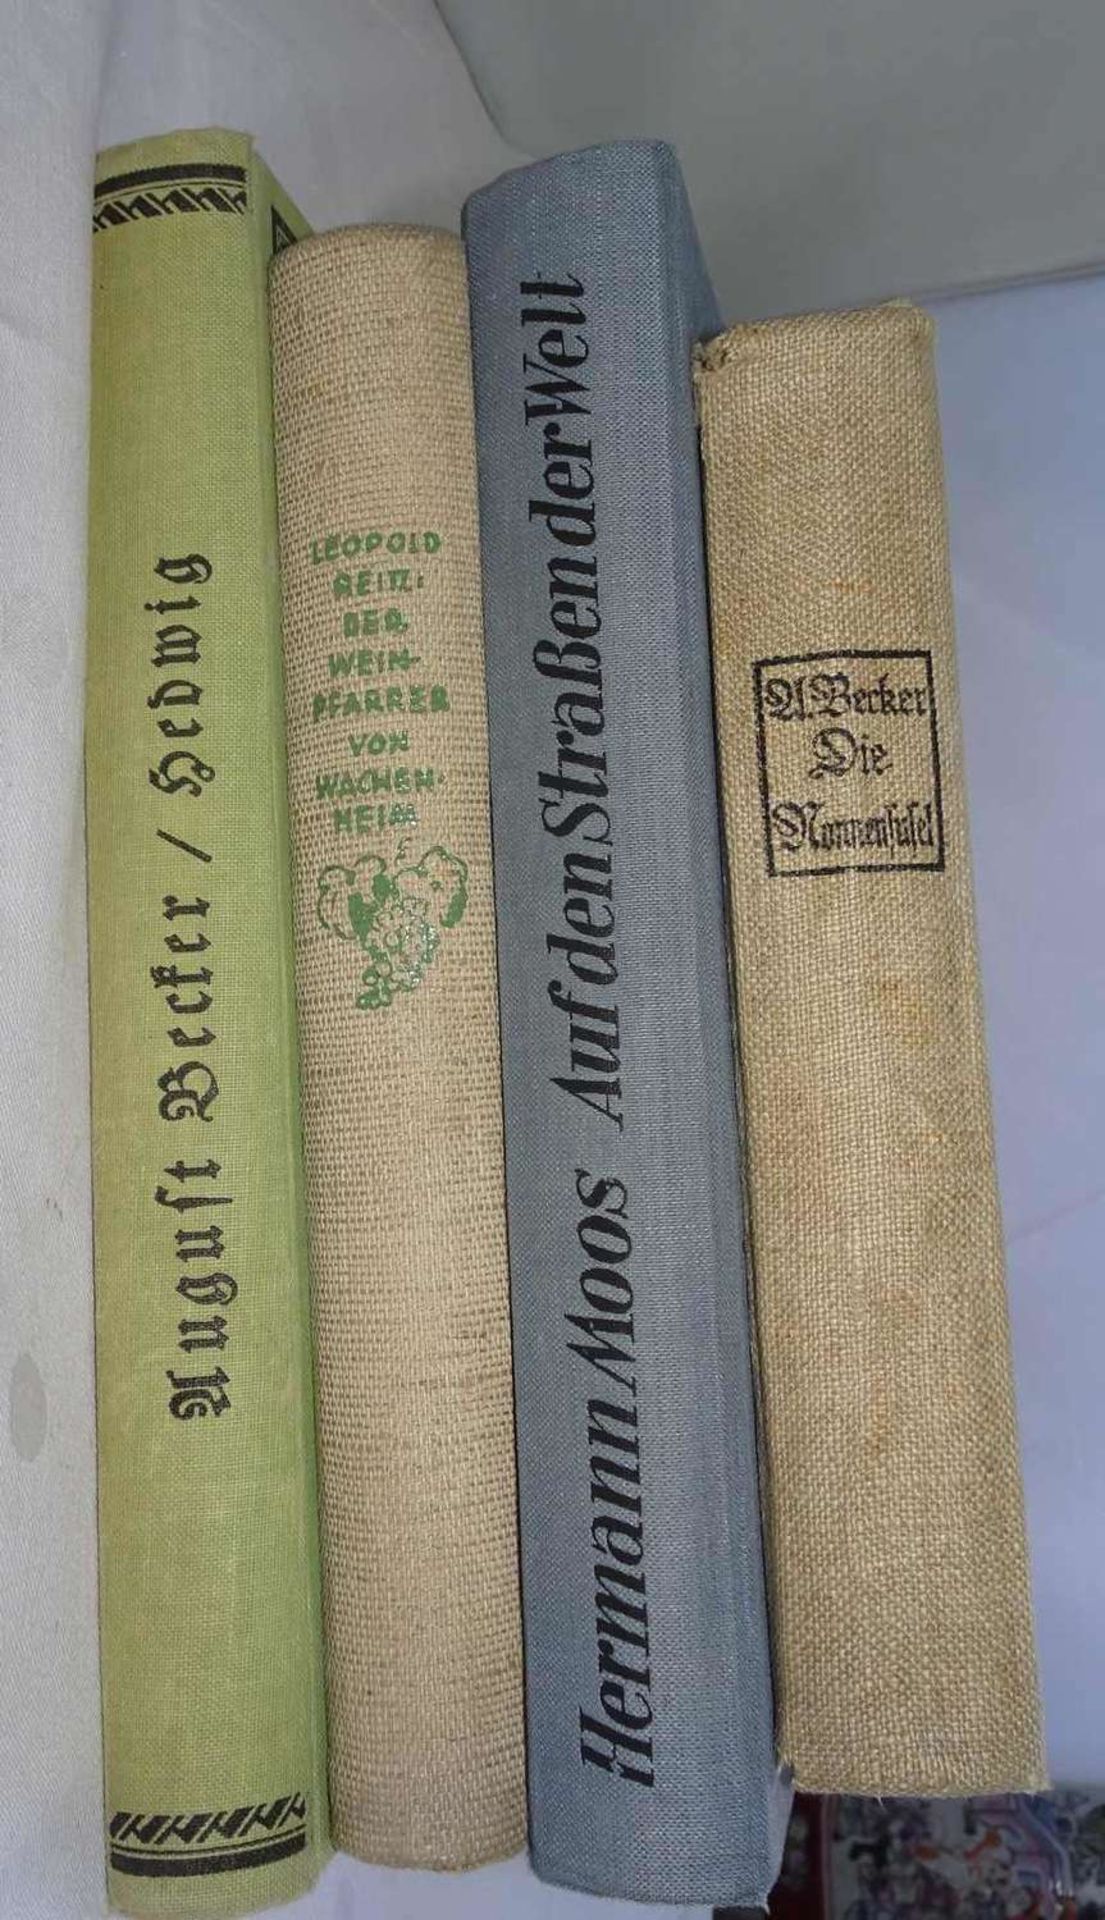 Pfalzliteratur, insgesamt 4 Bücher, dabei die Nonnentafel "Hedwig" beide von August Becker, Der